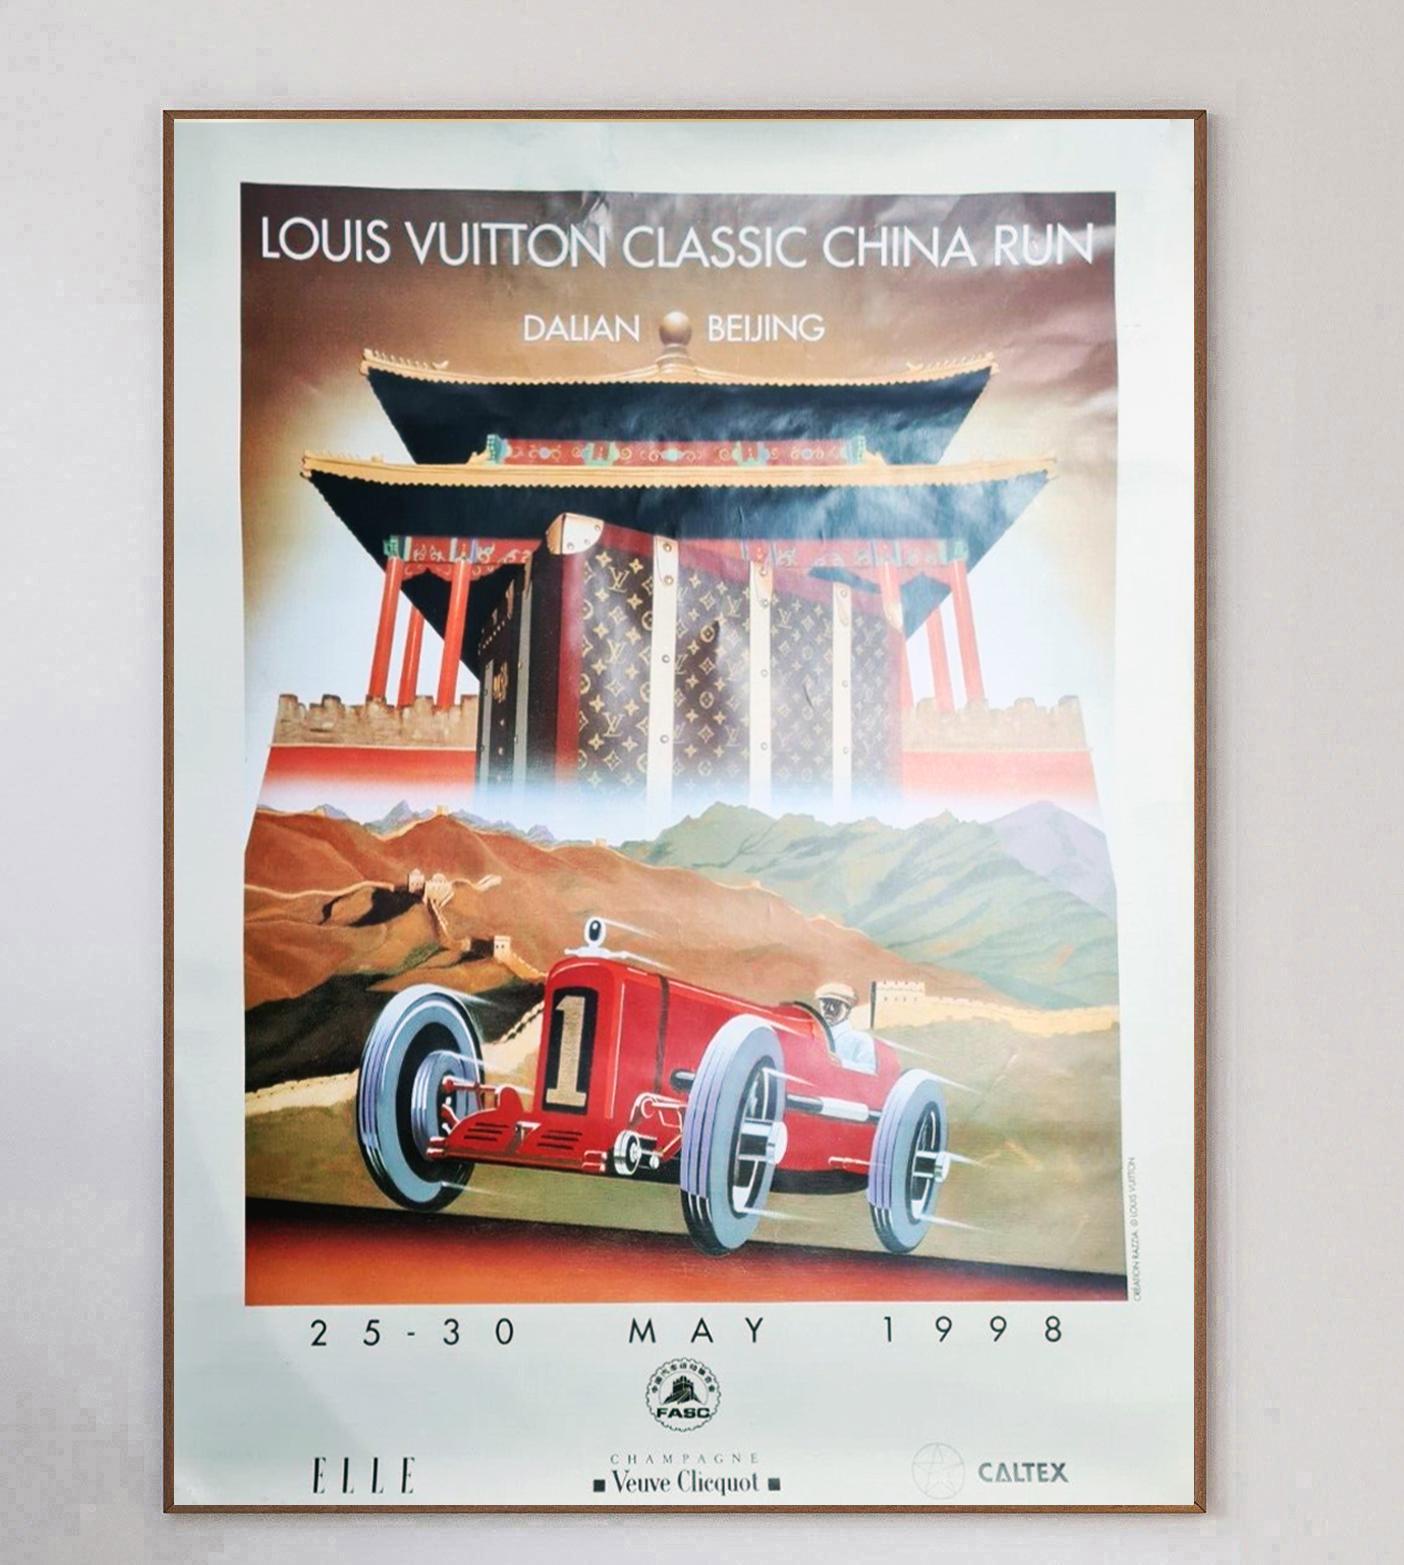 La Louis Vuitton Classic China Run est une course de voitures anciennes entre Dalian et Pékin. Cette superbe affiche représente une voiture passant devant la Cité interdite dans un style art déco. 

Magnifiquement illustrée par l'iconique Razzia au